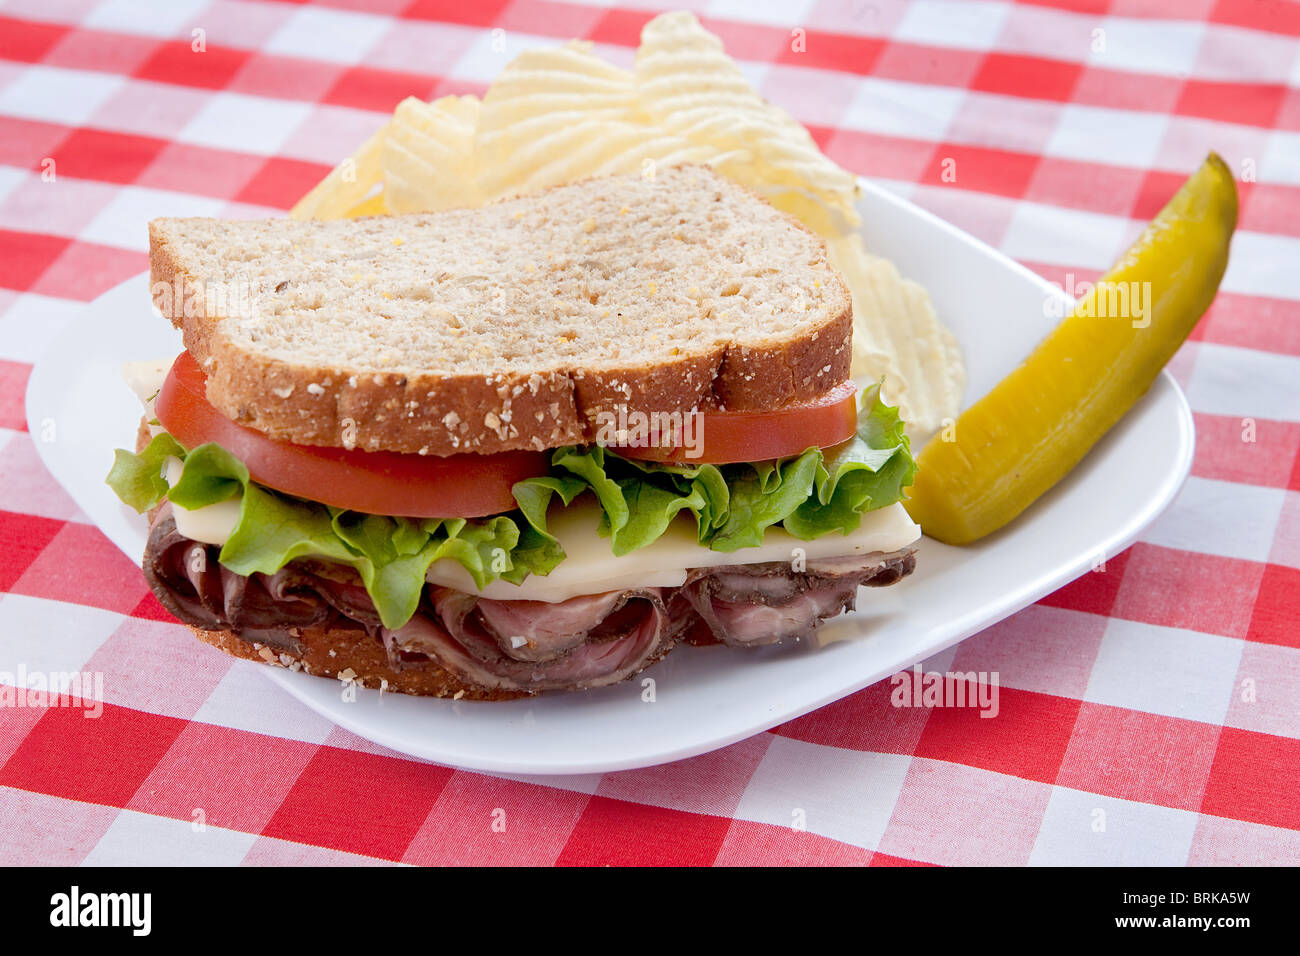 eine große roast Beef Sandwich auf Hafer-Brot mit Tomaten und Salat auf einem Teller mit klassischen rot-weiß karierte Tischdecke Stockfoto